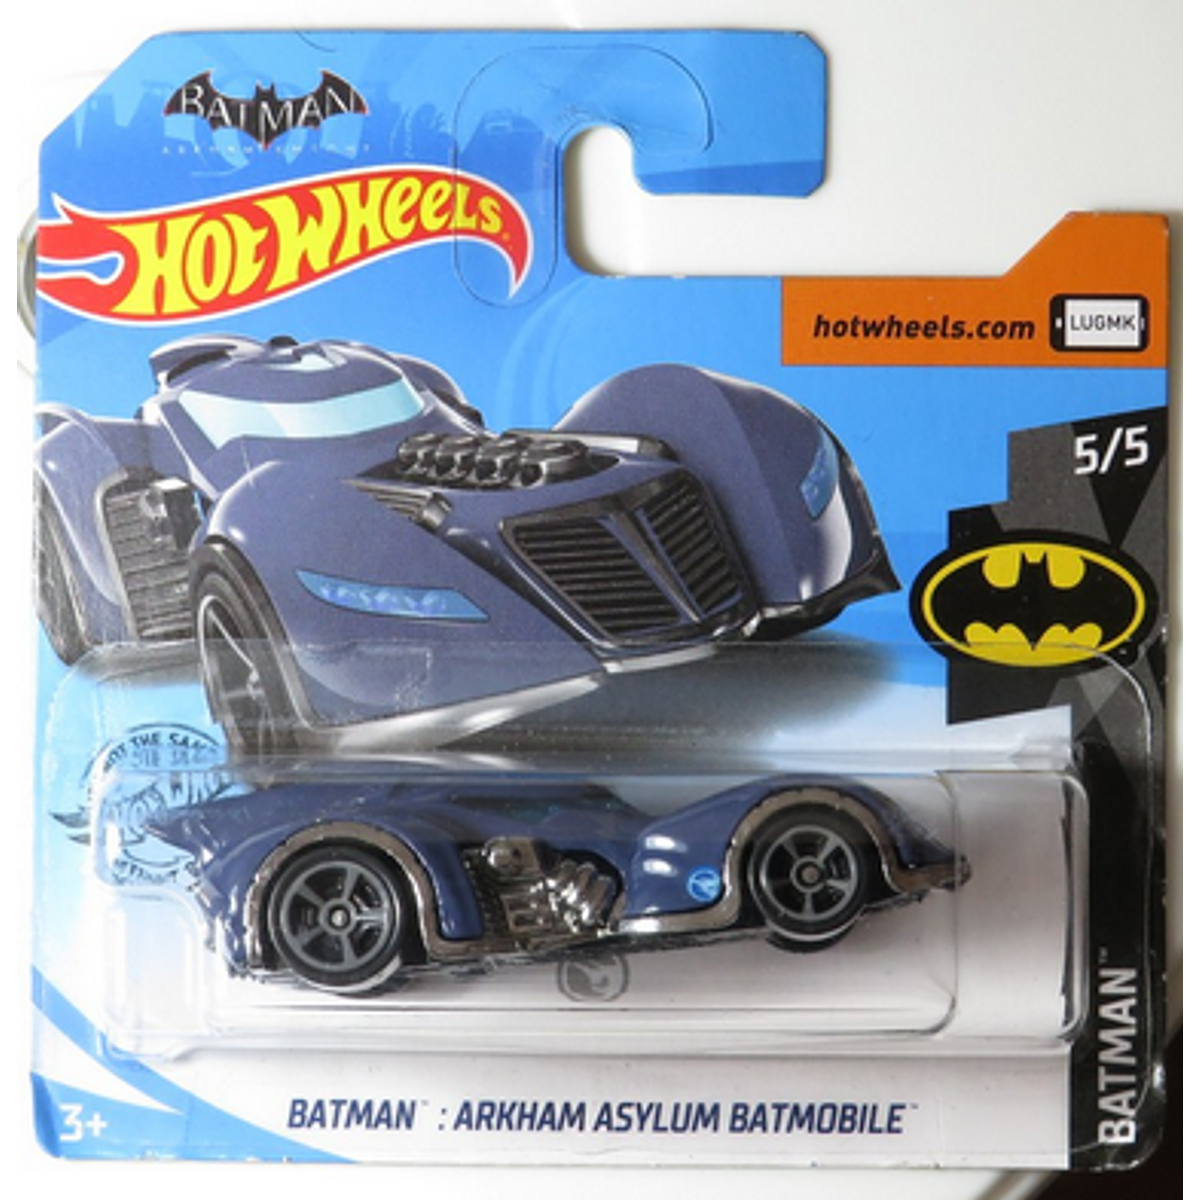 HOT WHEELS 2020-Treasure MANO!!! 5/5 archam Asylum Batmobile-serie "Batman" 